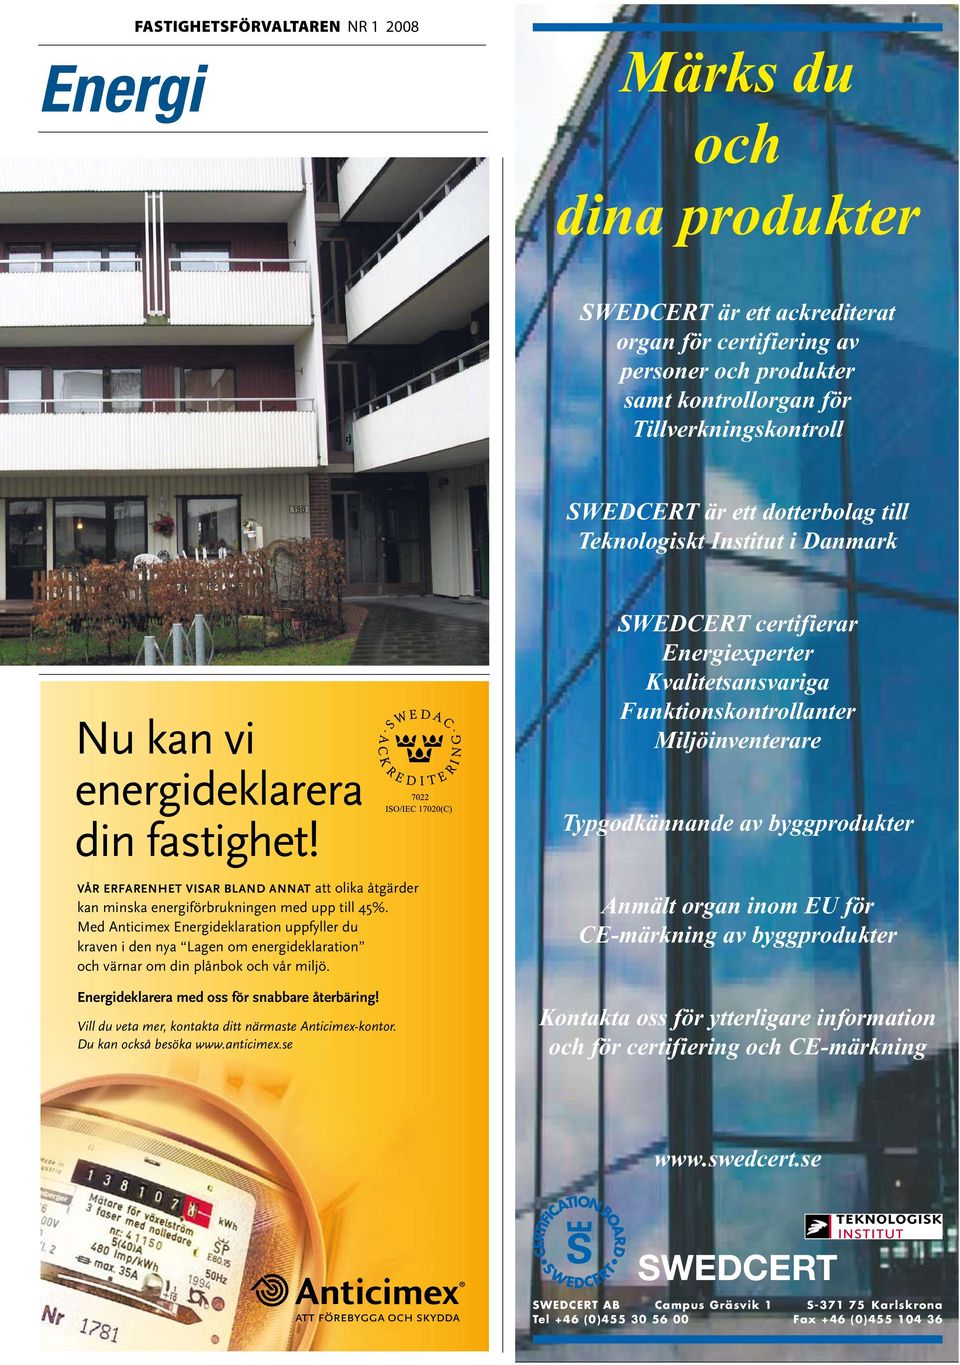 Kvalitetsansvariga Funktionskontrollanter Miljöinventerare Typgodkännande av byggprodukter Anmält organ inom EU för CE-märkning av byggprodukter Kontakta oss